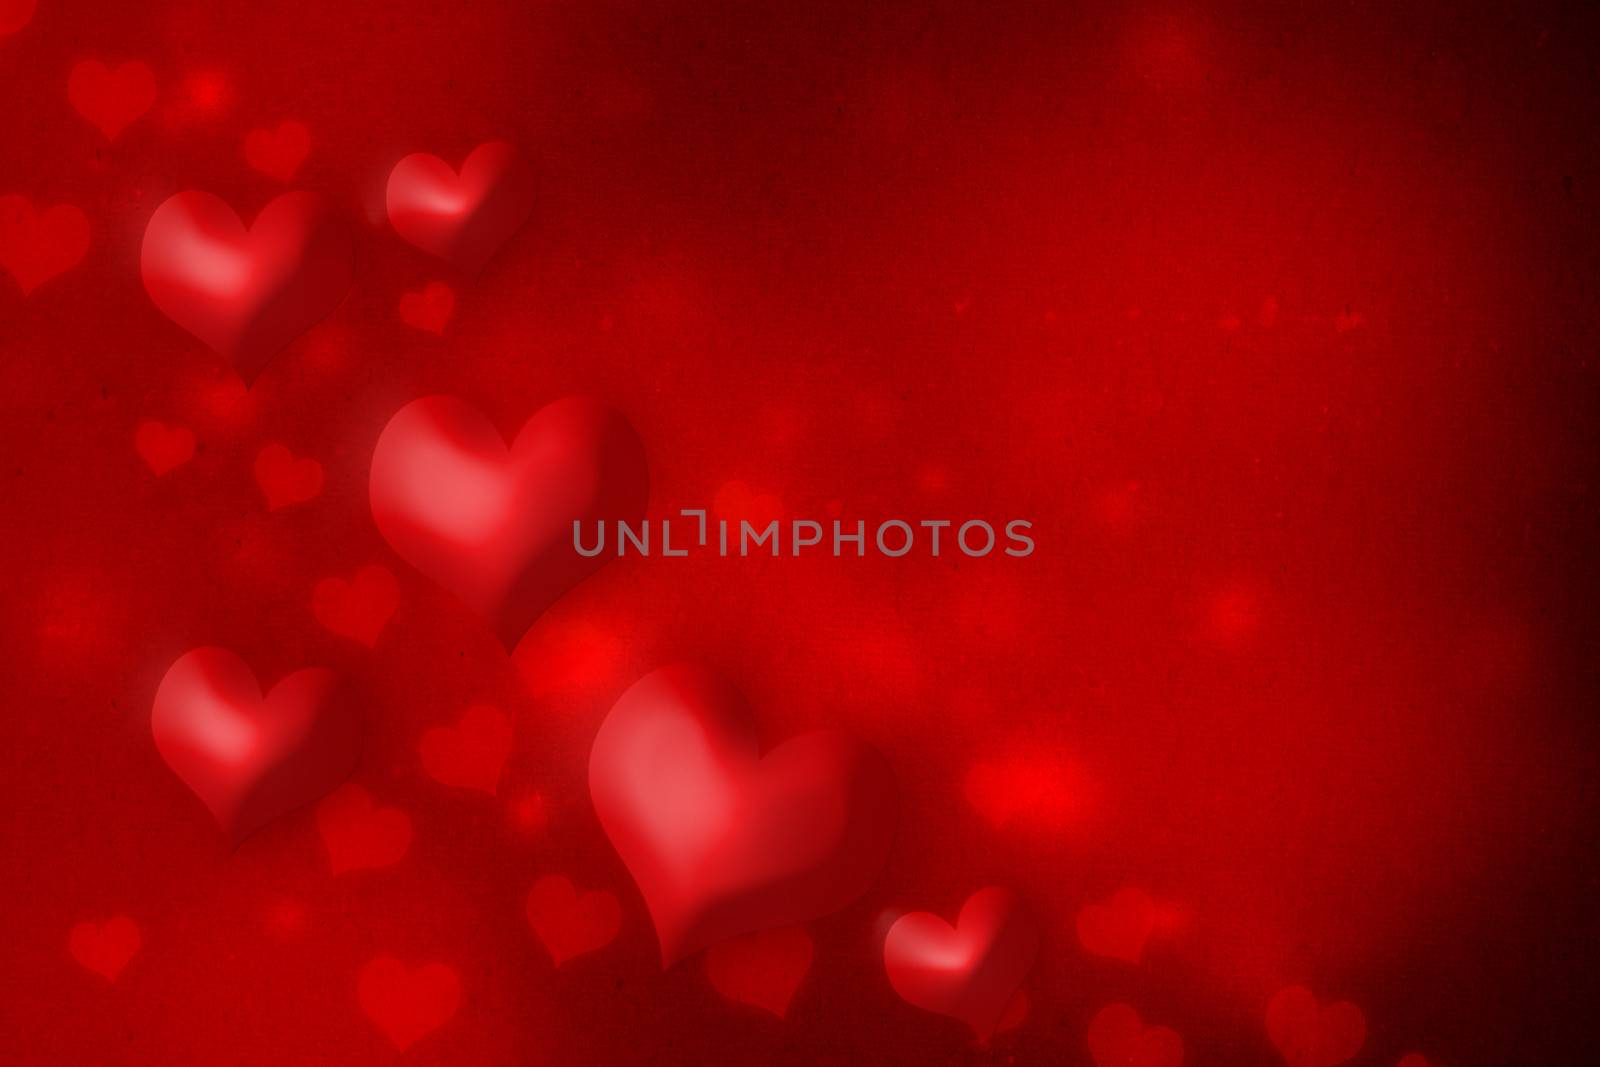 Red hearts by melpomene